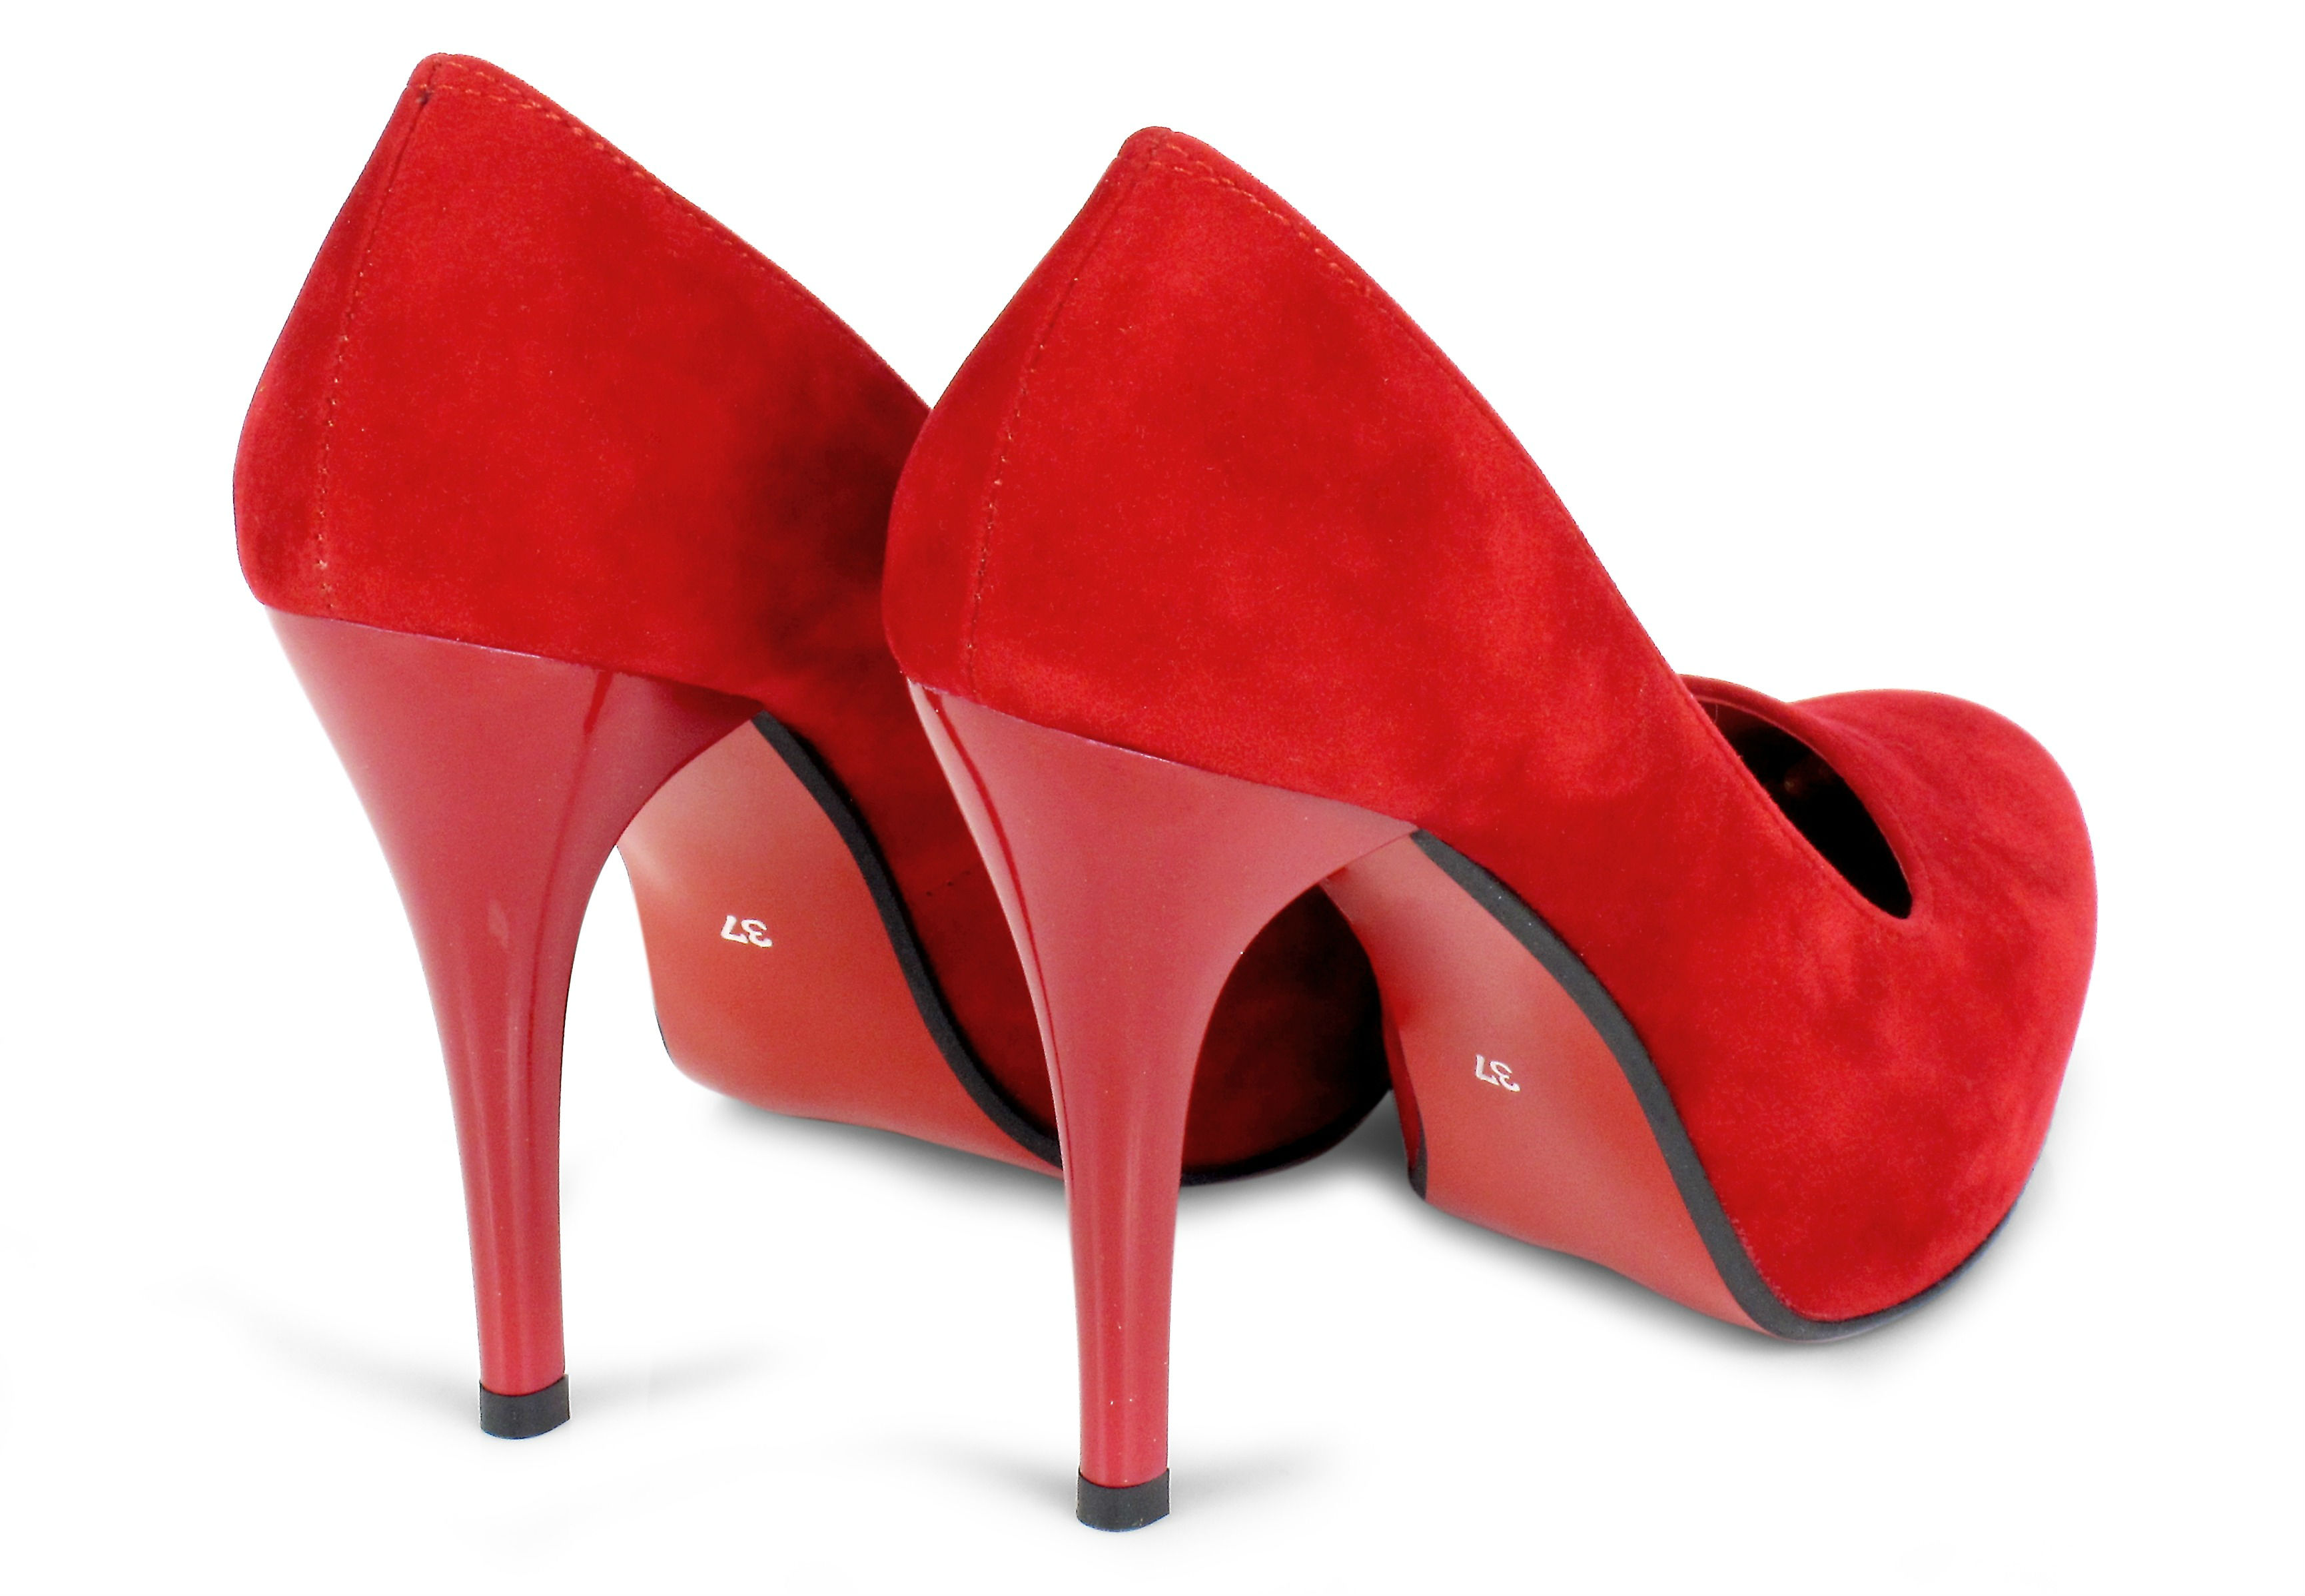 Rode pumps, speciale schoenen laten aanmeten bij een fysieke beperking